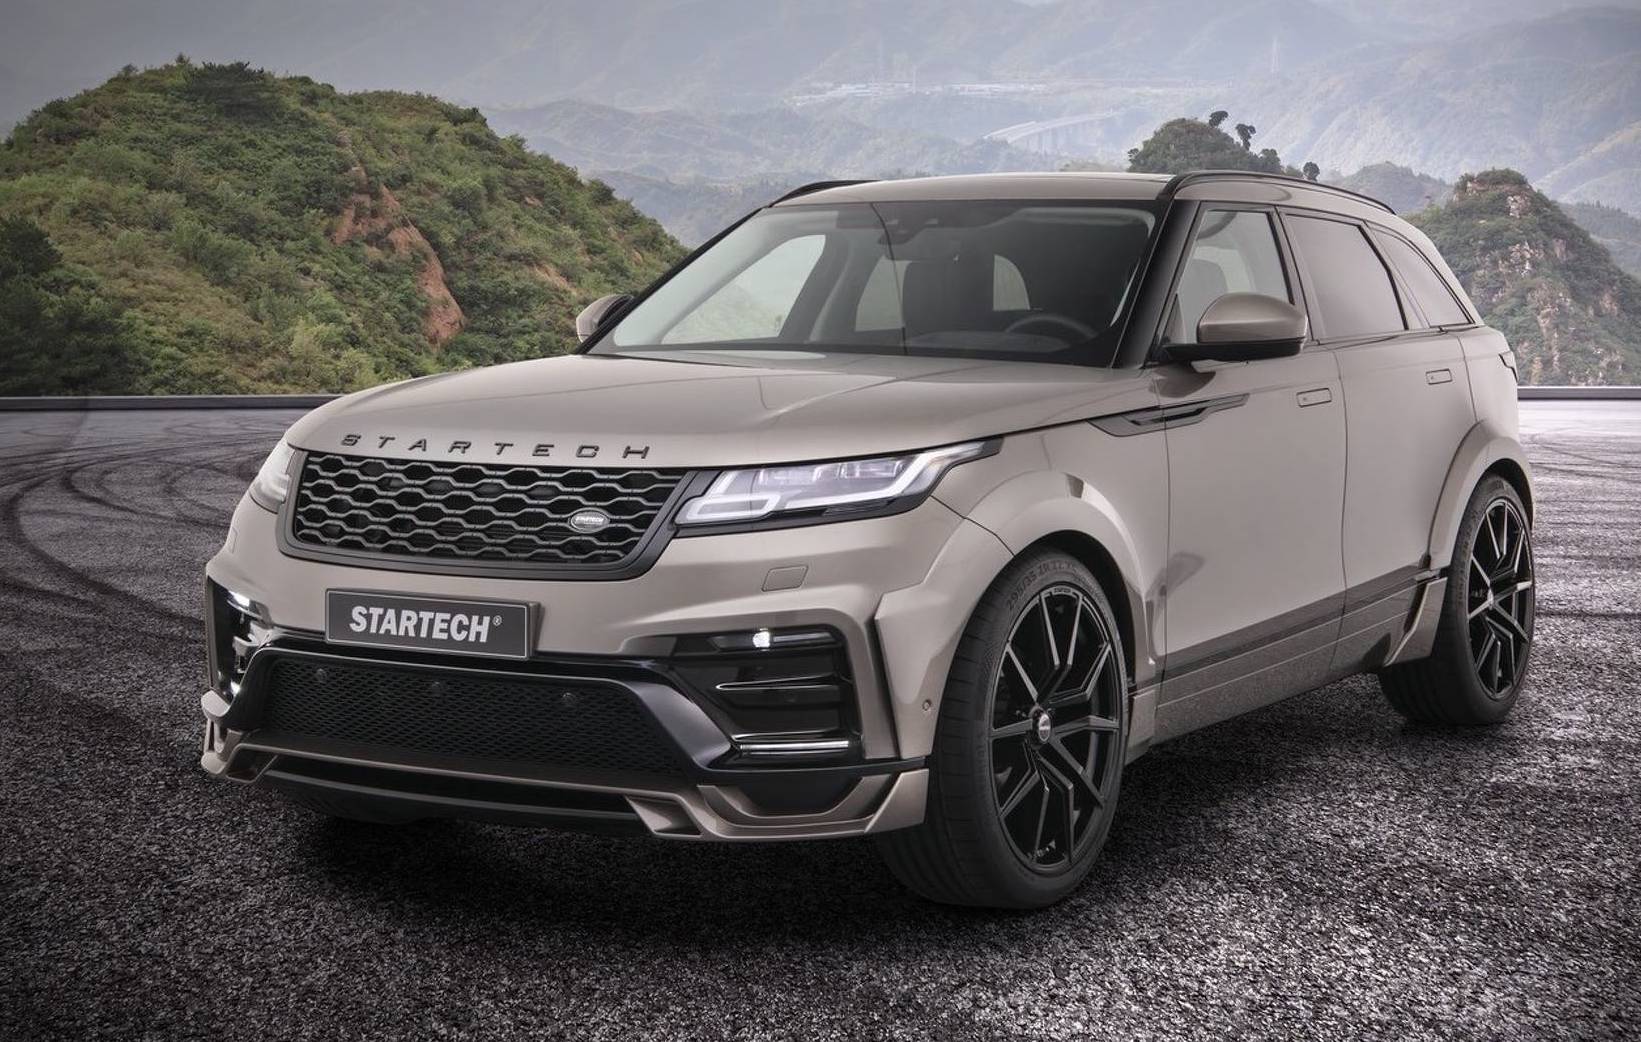 Startech develops wide-body kit for Range Rover Velar